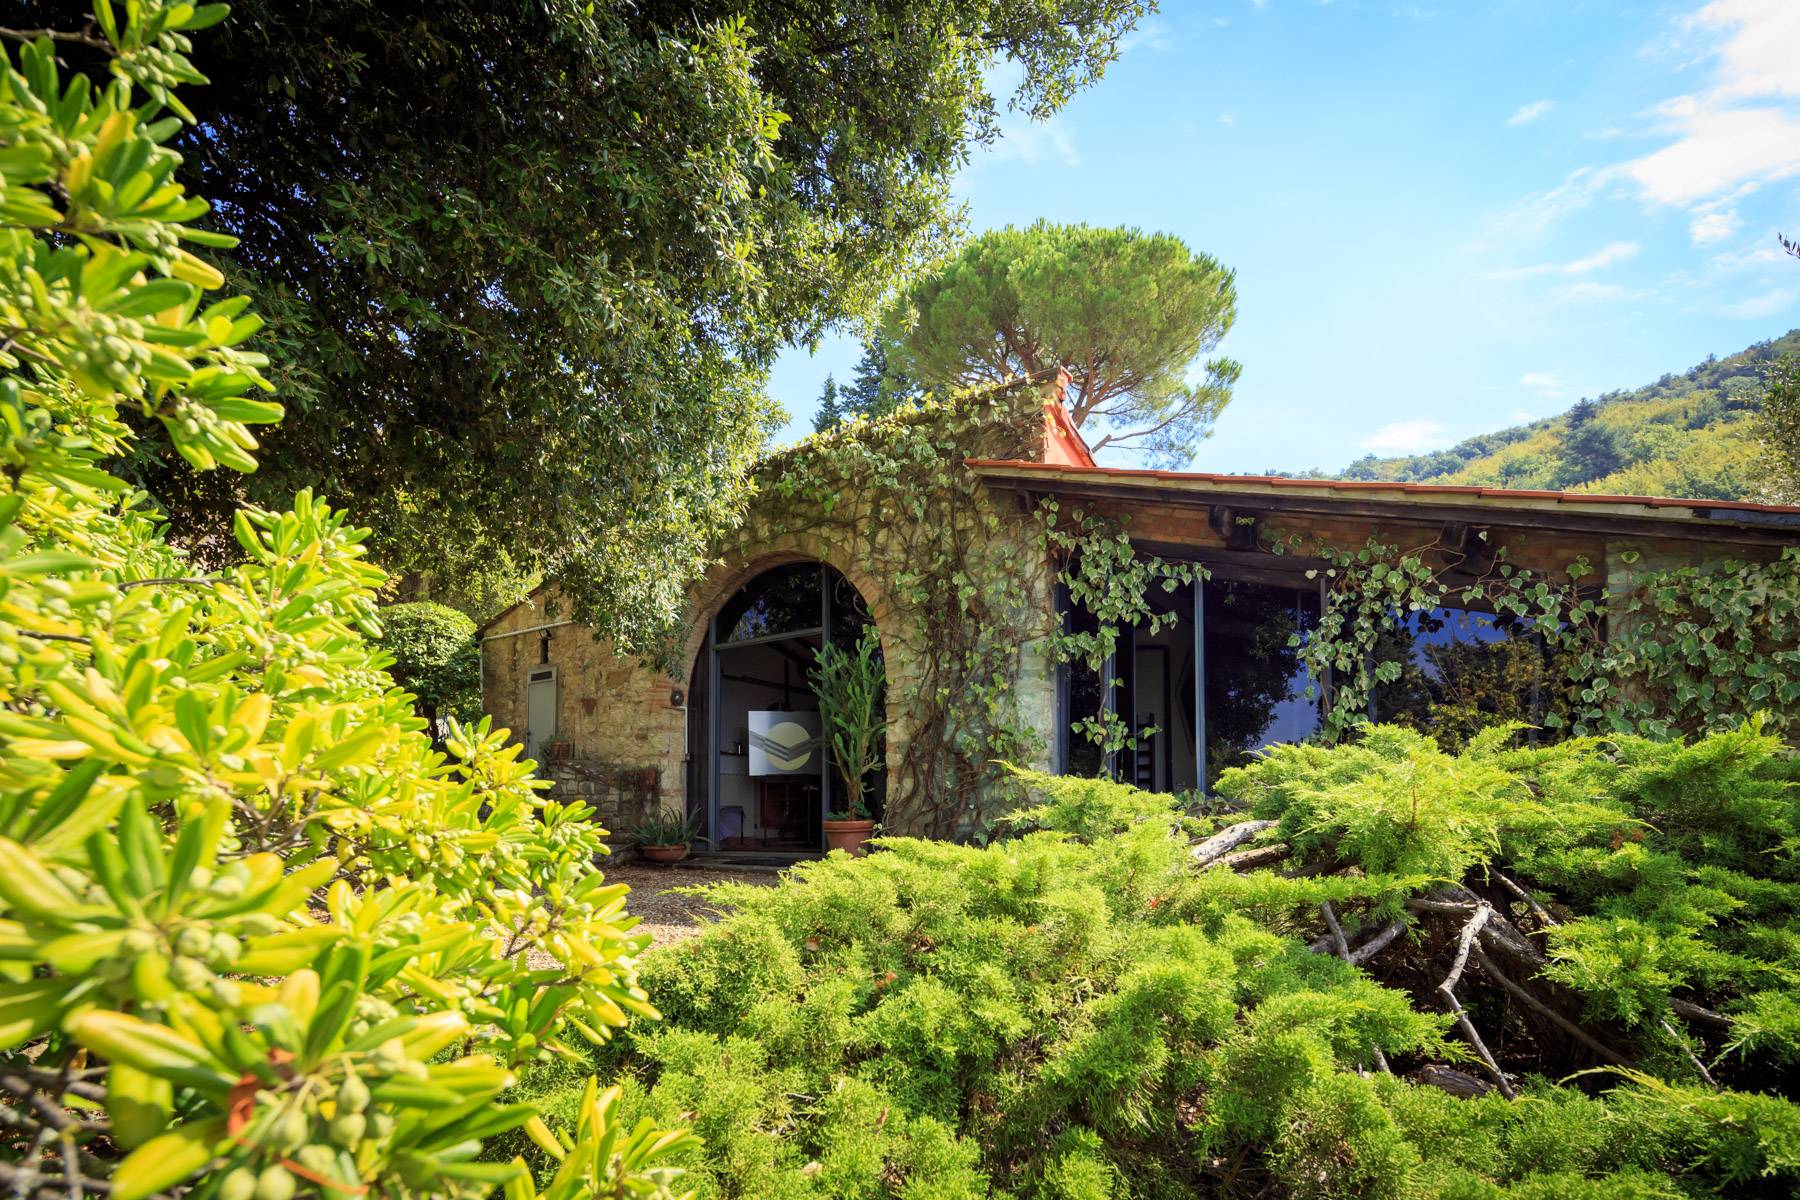 Casa indipendente in Vendita a Fiesole: 5 locali, 340 mq - Foto 7